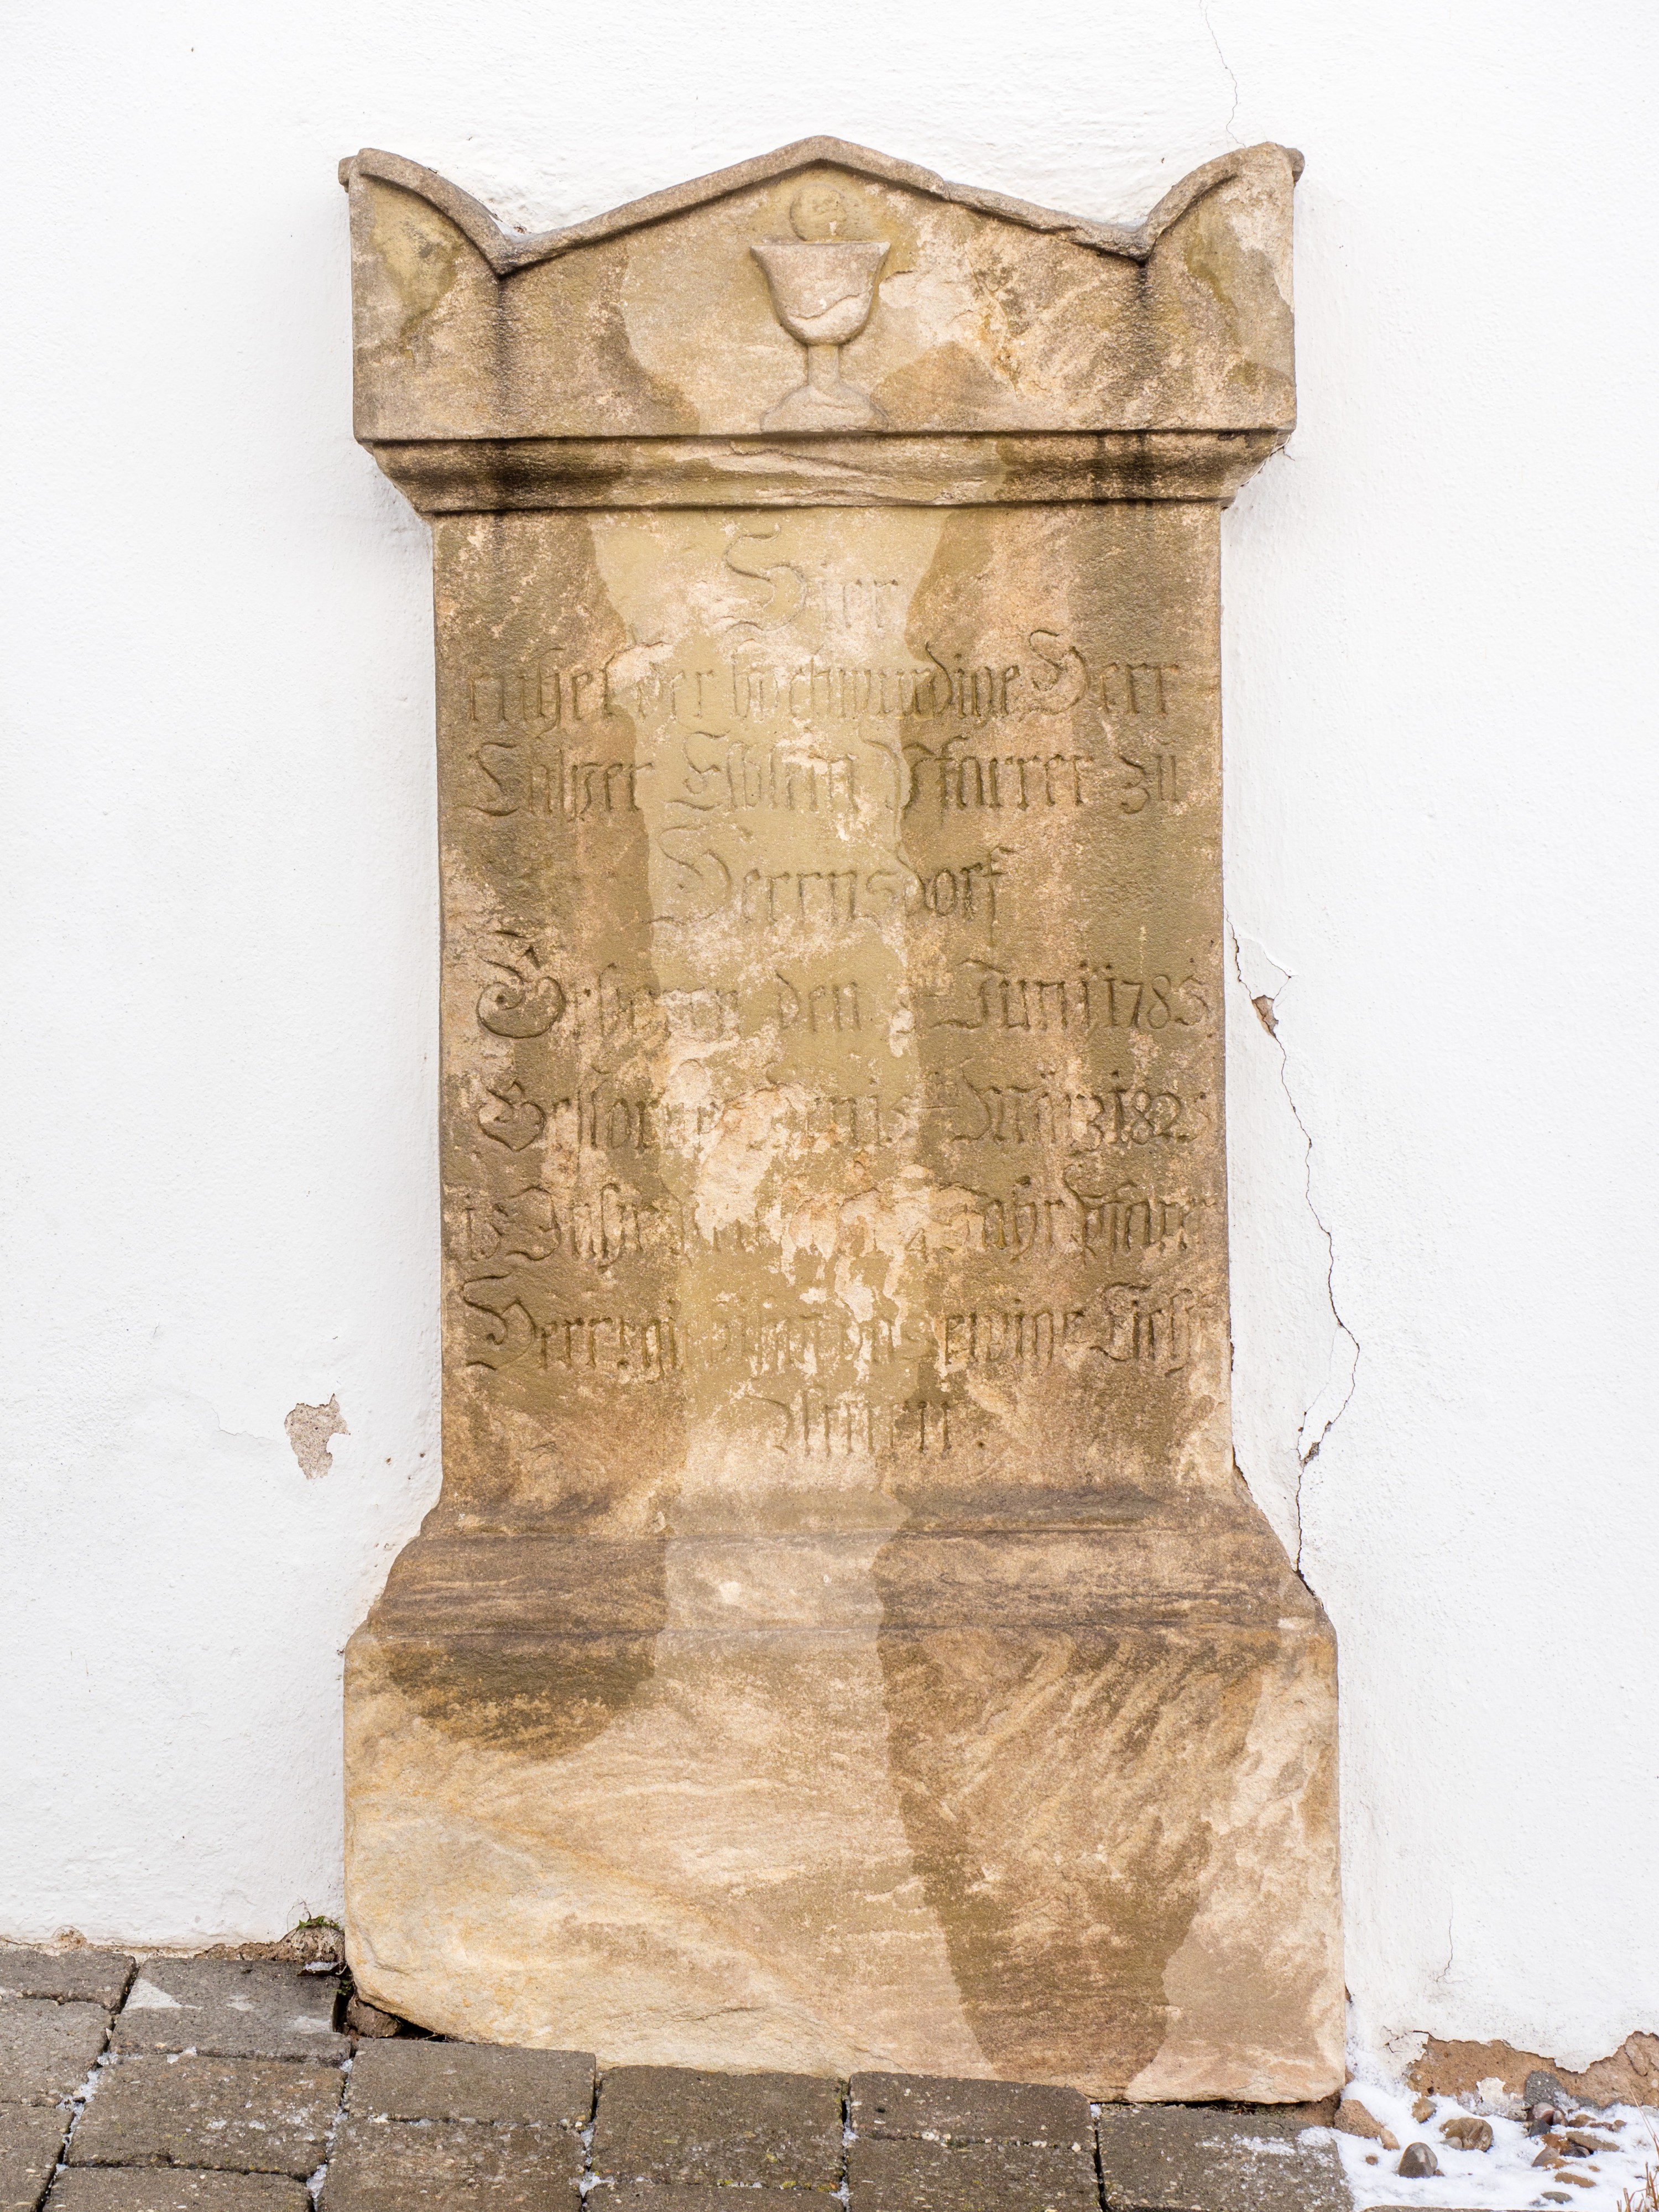 Herrnsdorf-Kirche-gravestone-P1050042